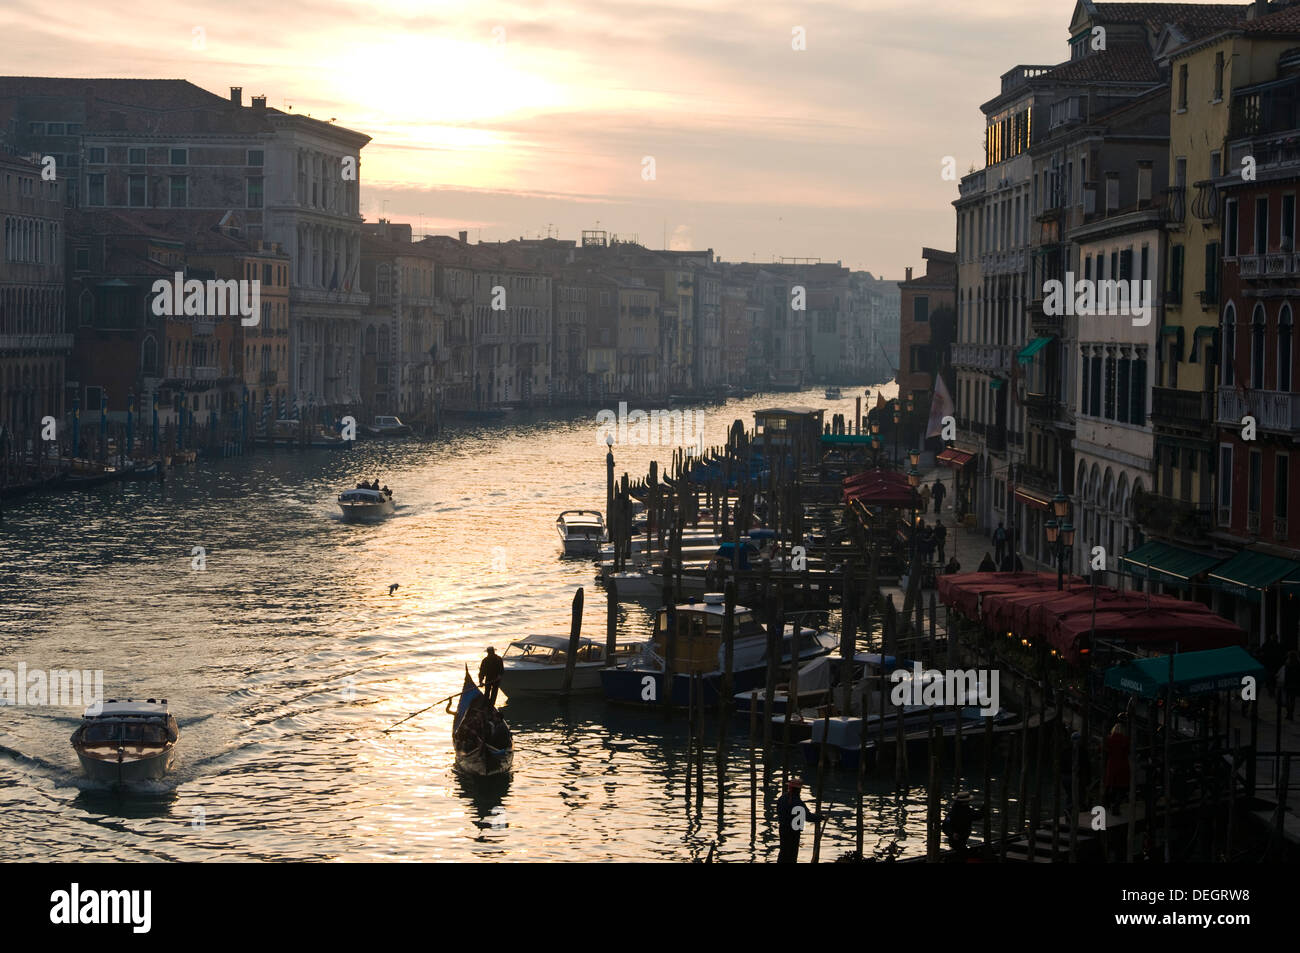 Canal Grand, Venedig, Italien. Die Gondel macht sich beim Sonnenuntergang auf den Weg durch den Grand-Kanal. Stockfoto